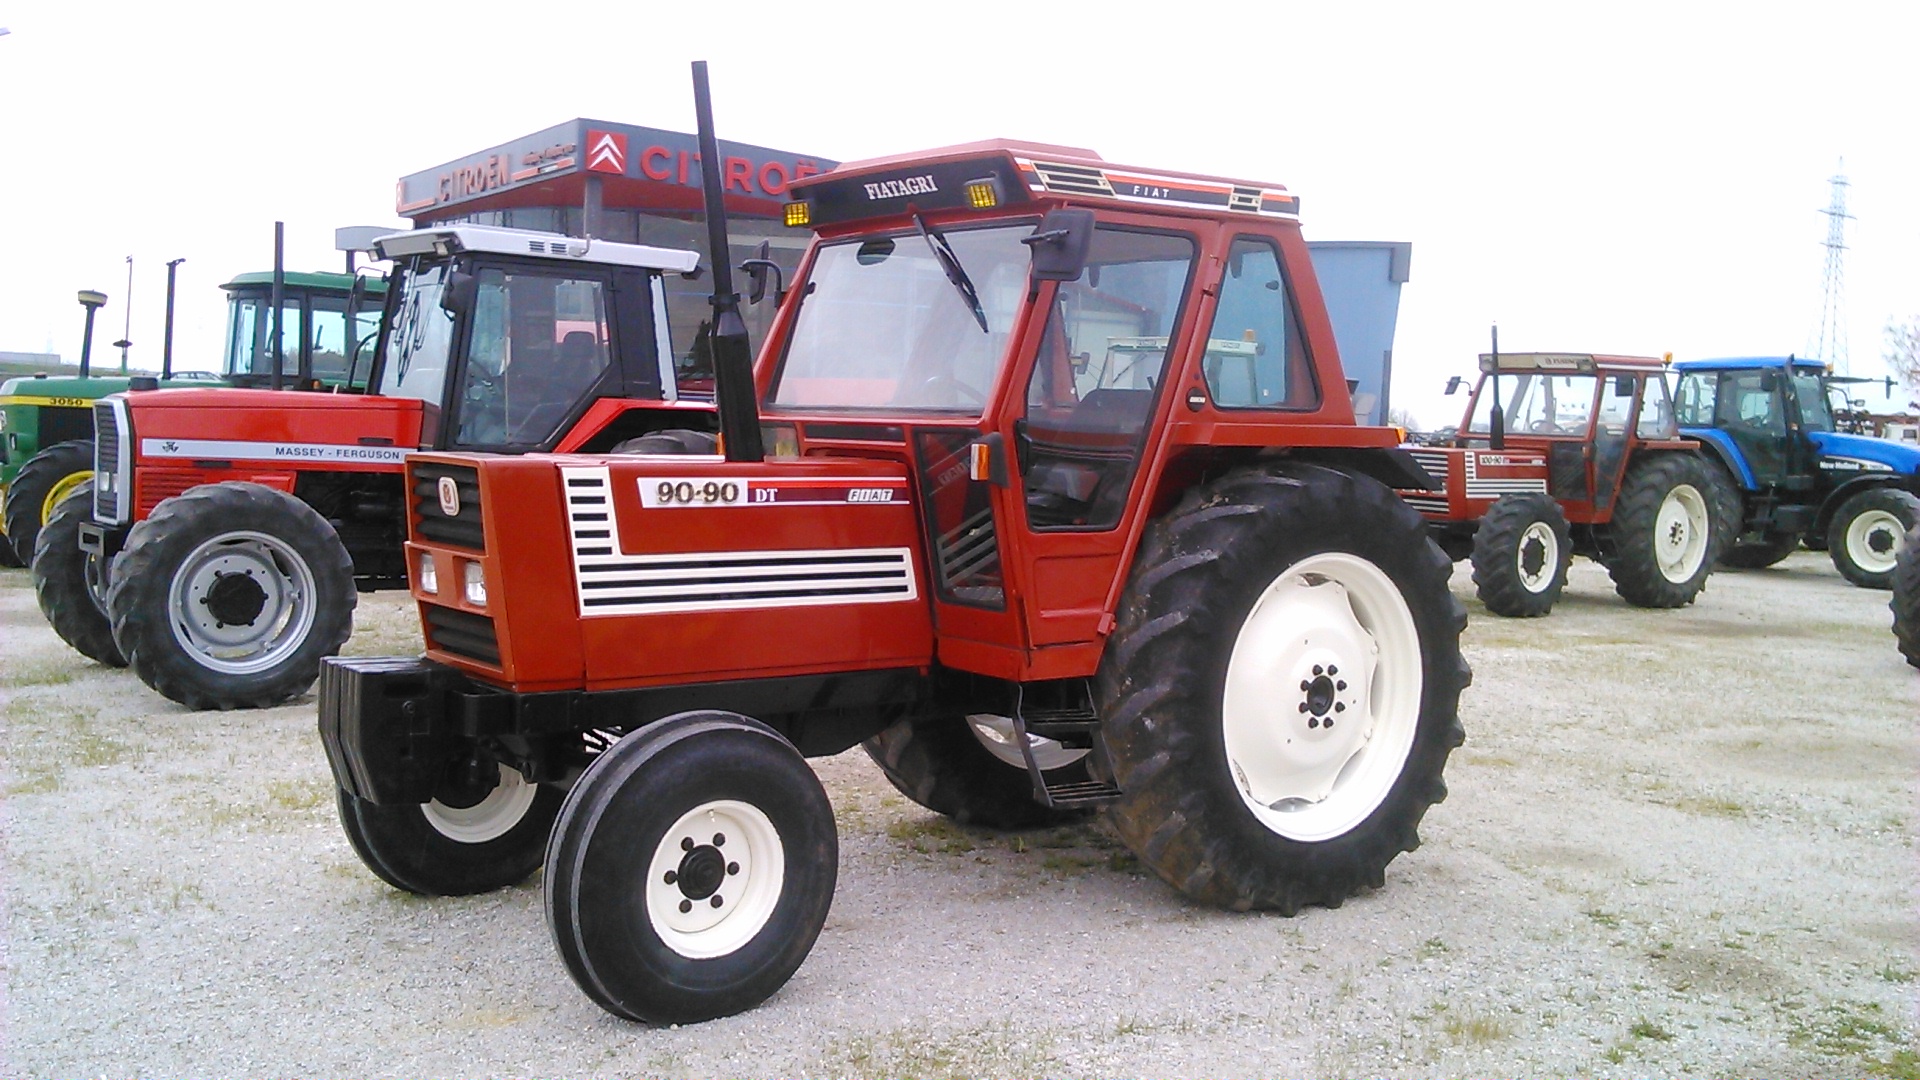 Fiat 90-90 Gebrauchte Traktoren gebraucht kaufen und verkaufen bei ...